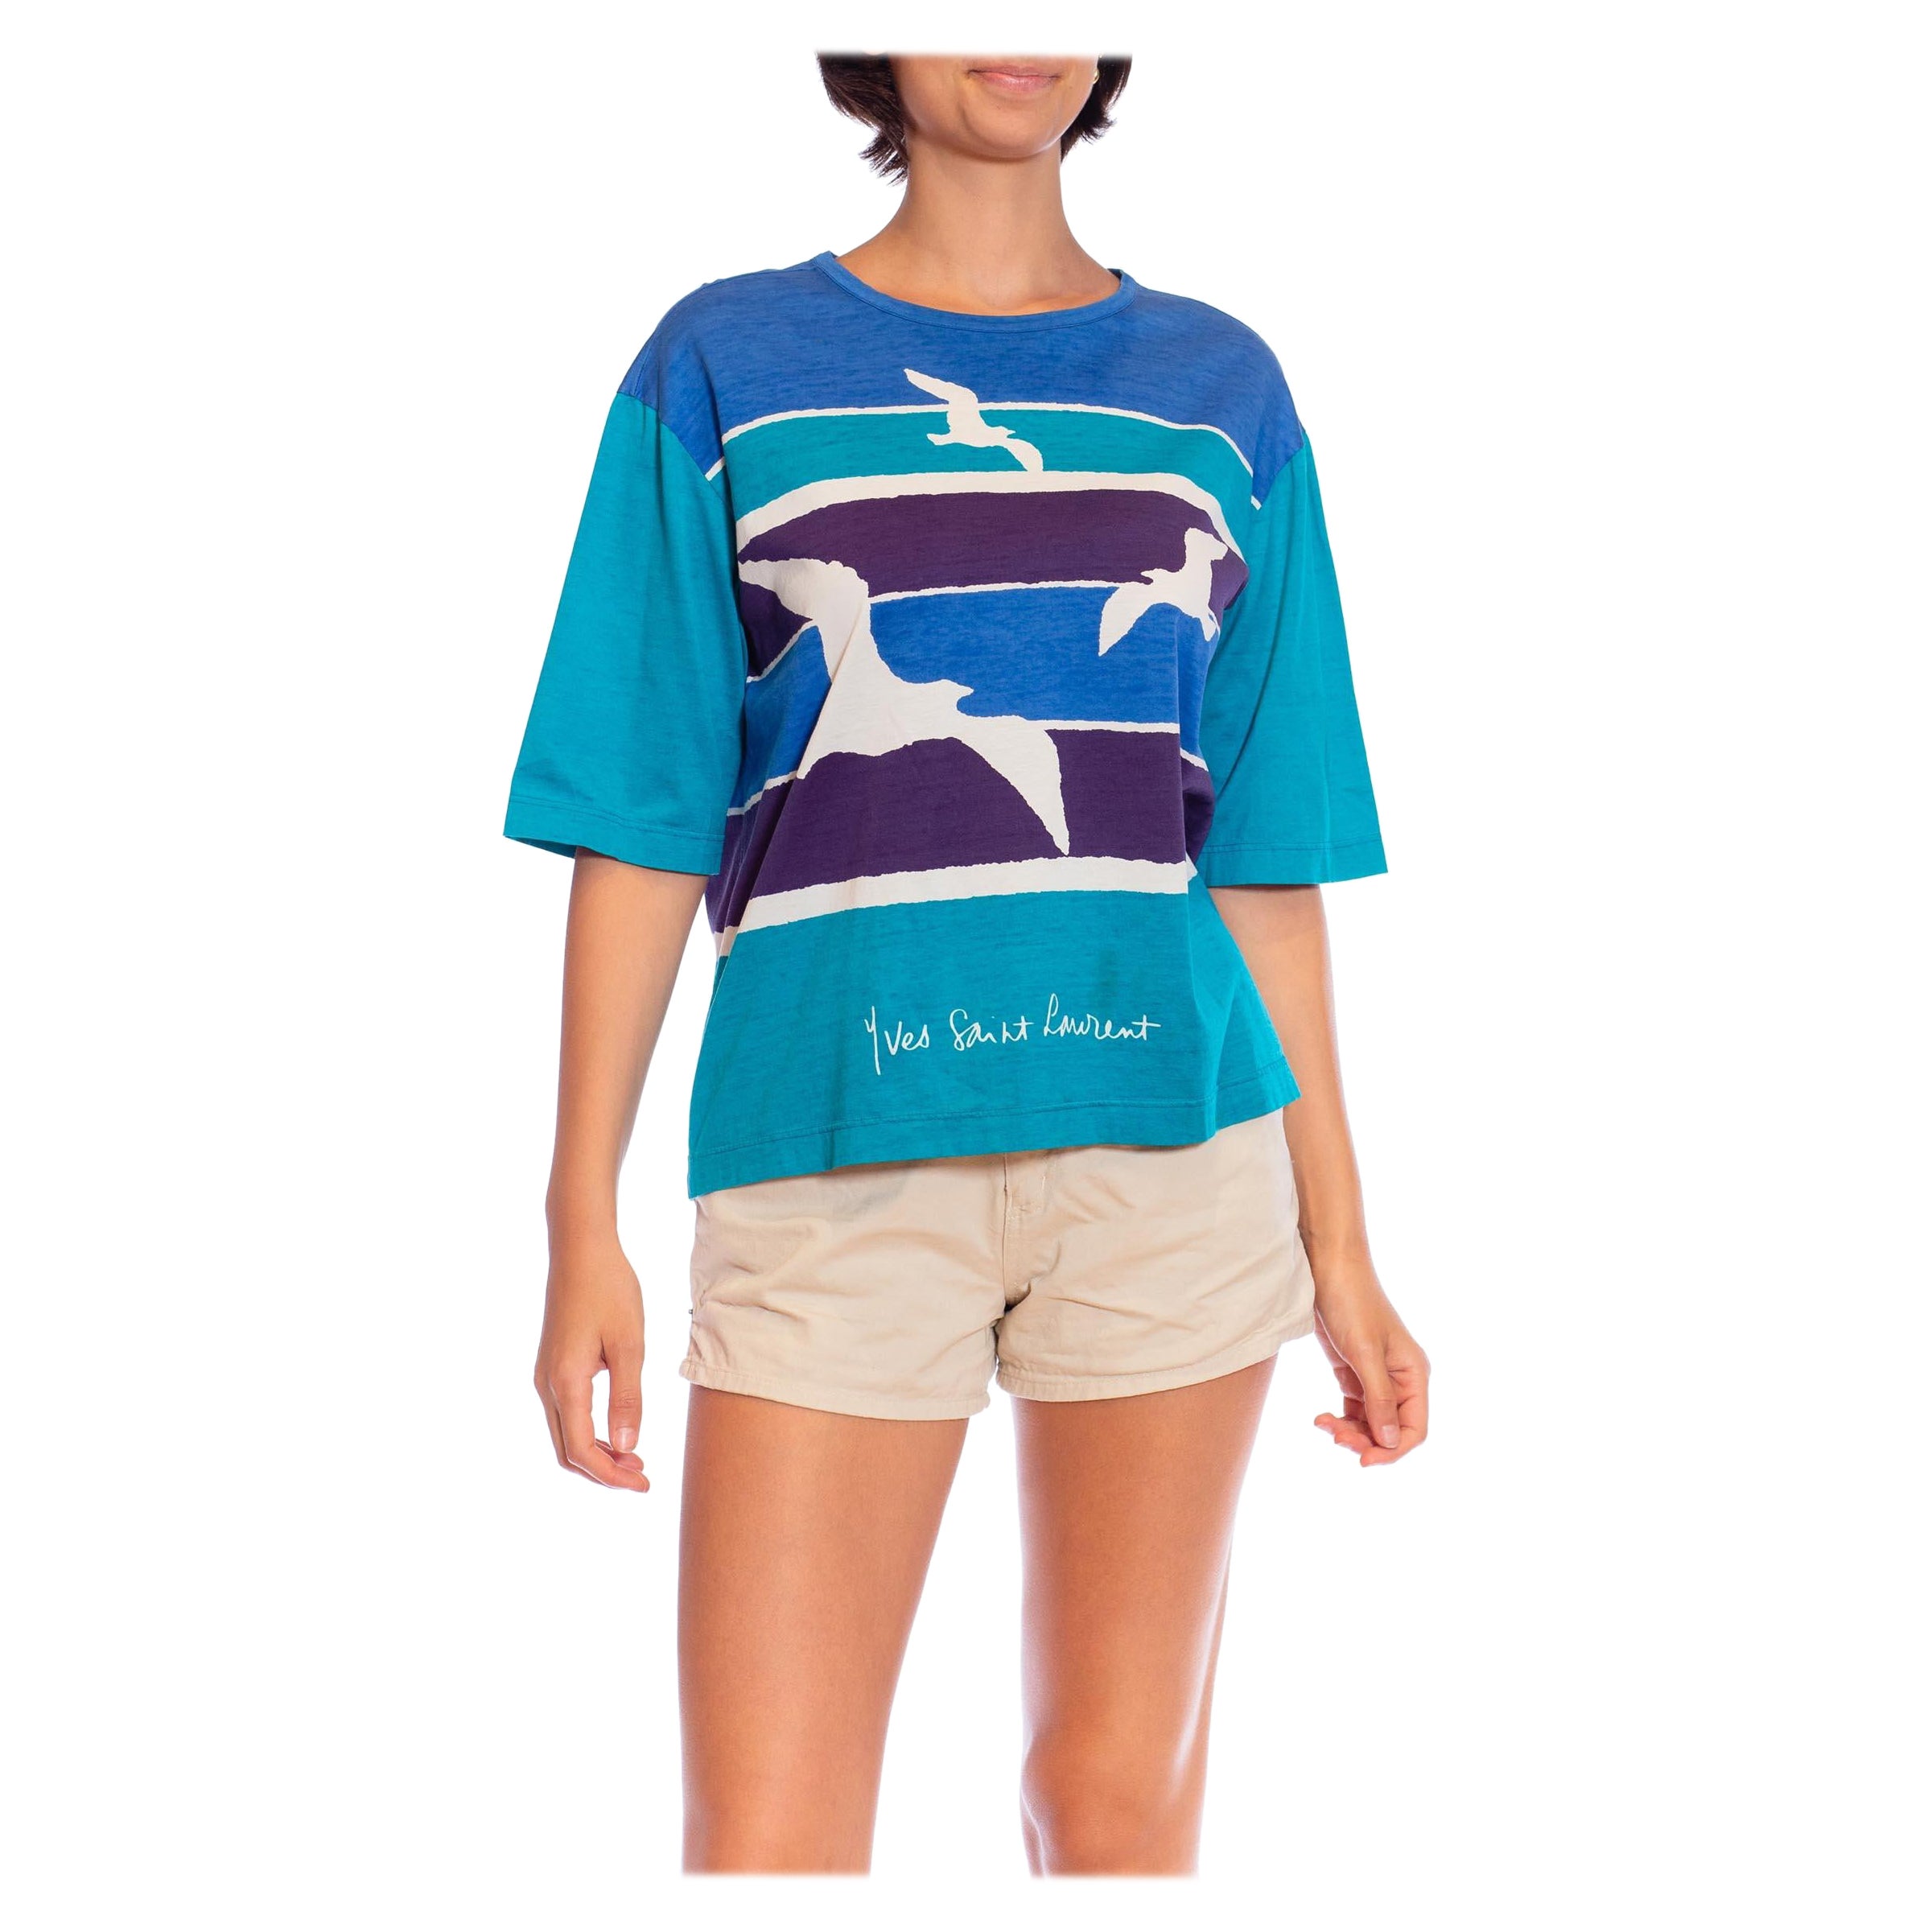 1970S YVES SAINT LAURENT Blue & Teal Cotton Jersey Rare Seashore Print T-Shirt For Sale